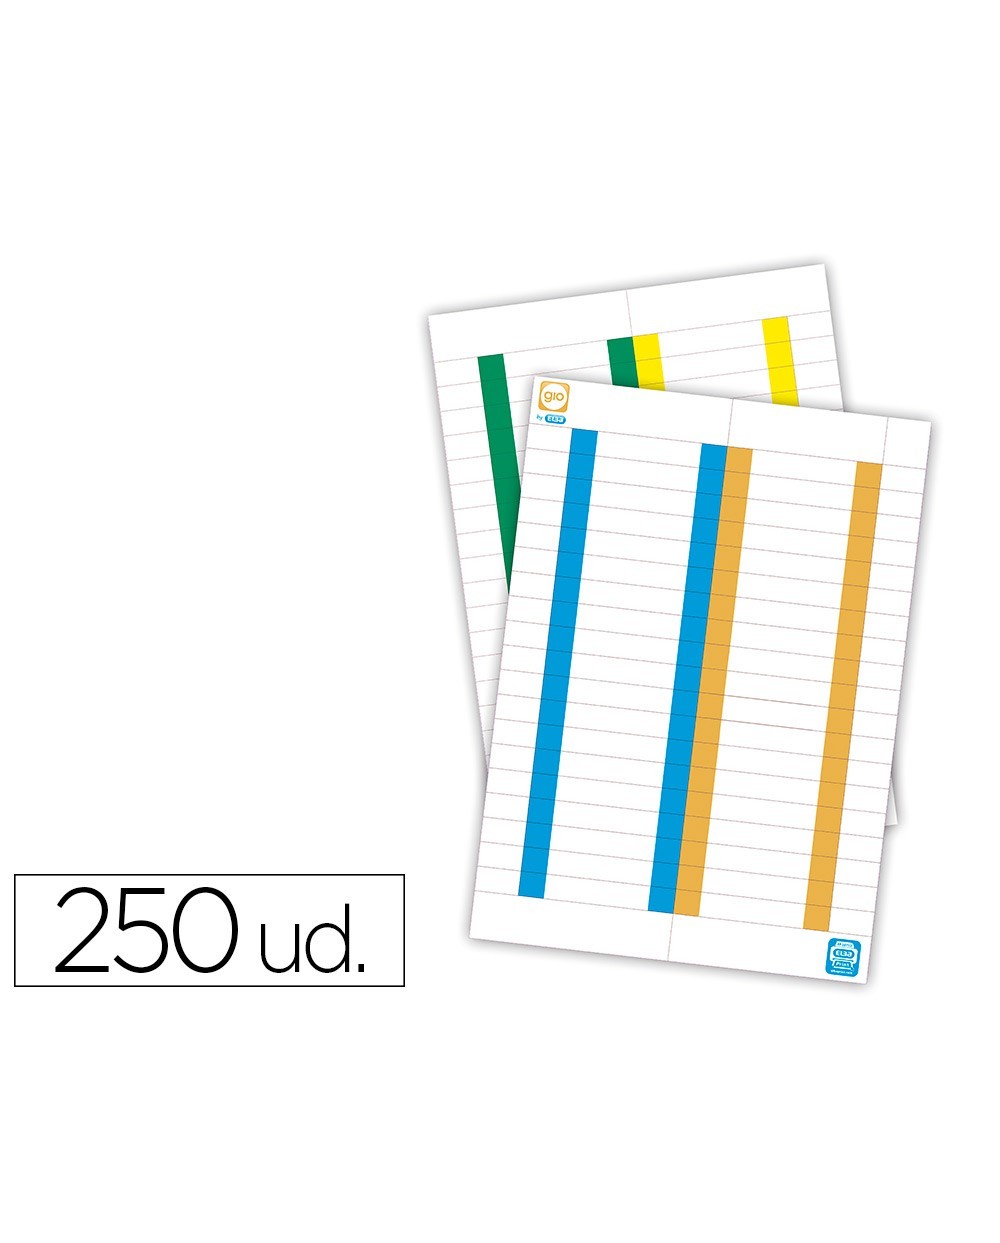 Tira de papel para visores pack de 380 etiquetas